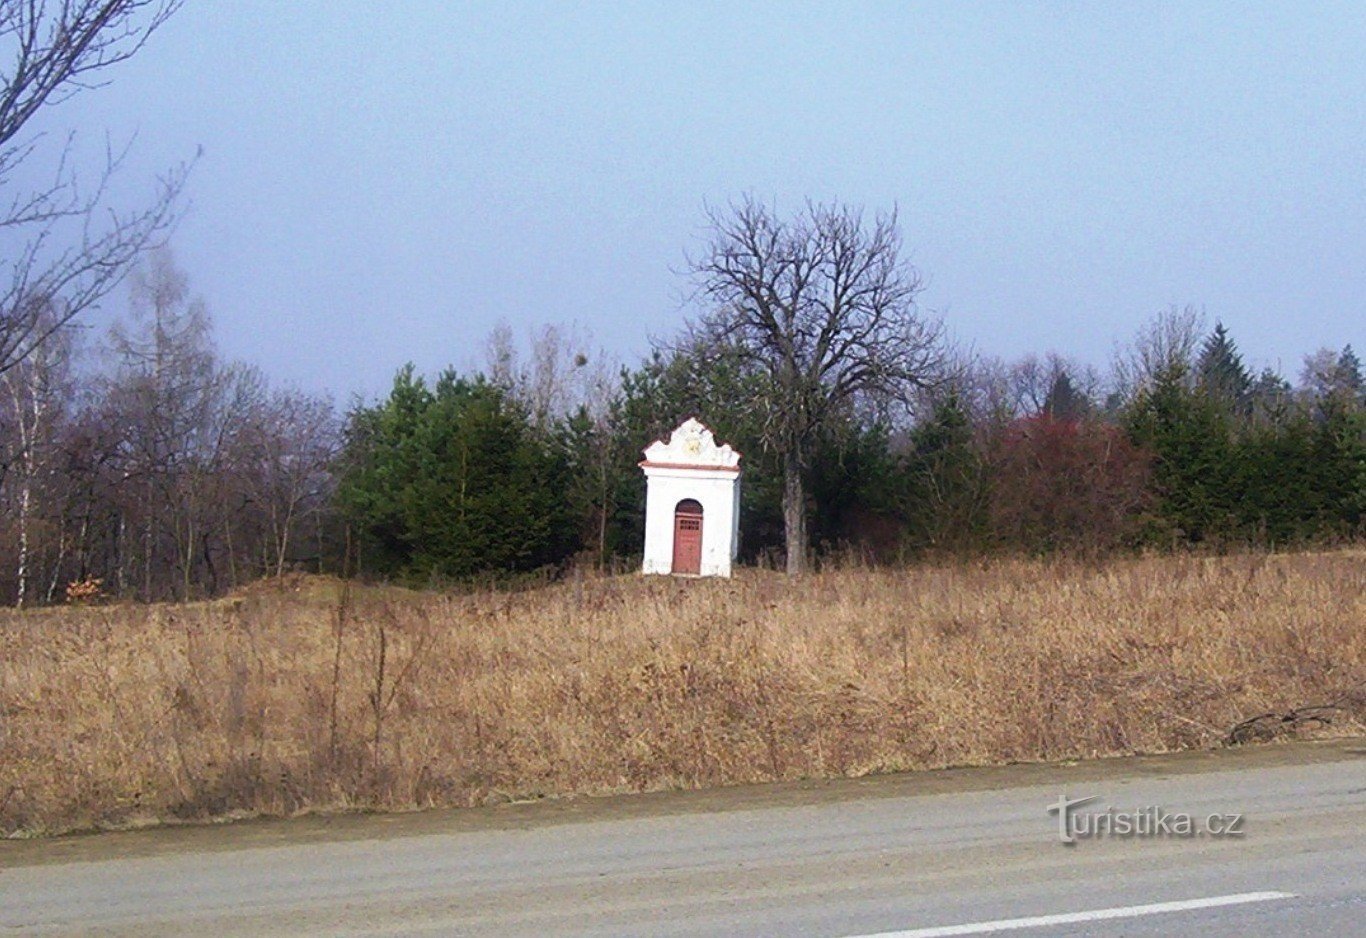 Droždín - capela de lângă drumul de câmp spre Svatý Kopeček - Foto: Ulrych Mir.